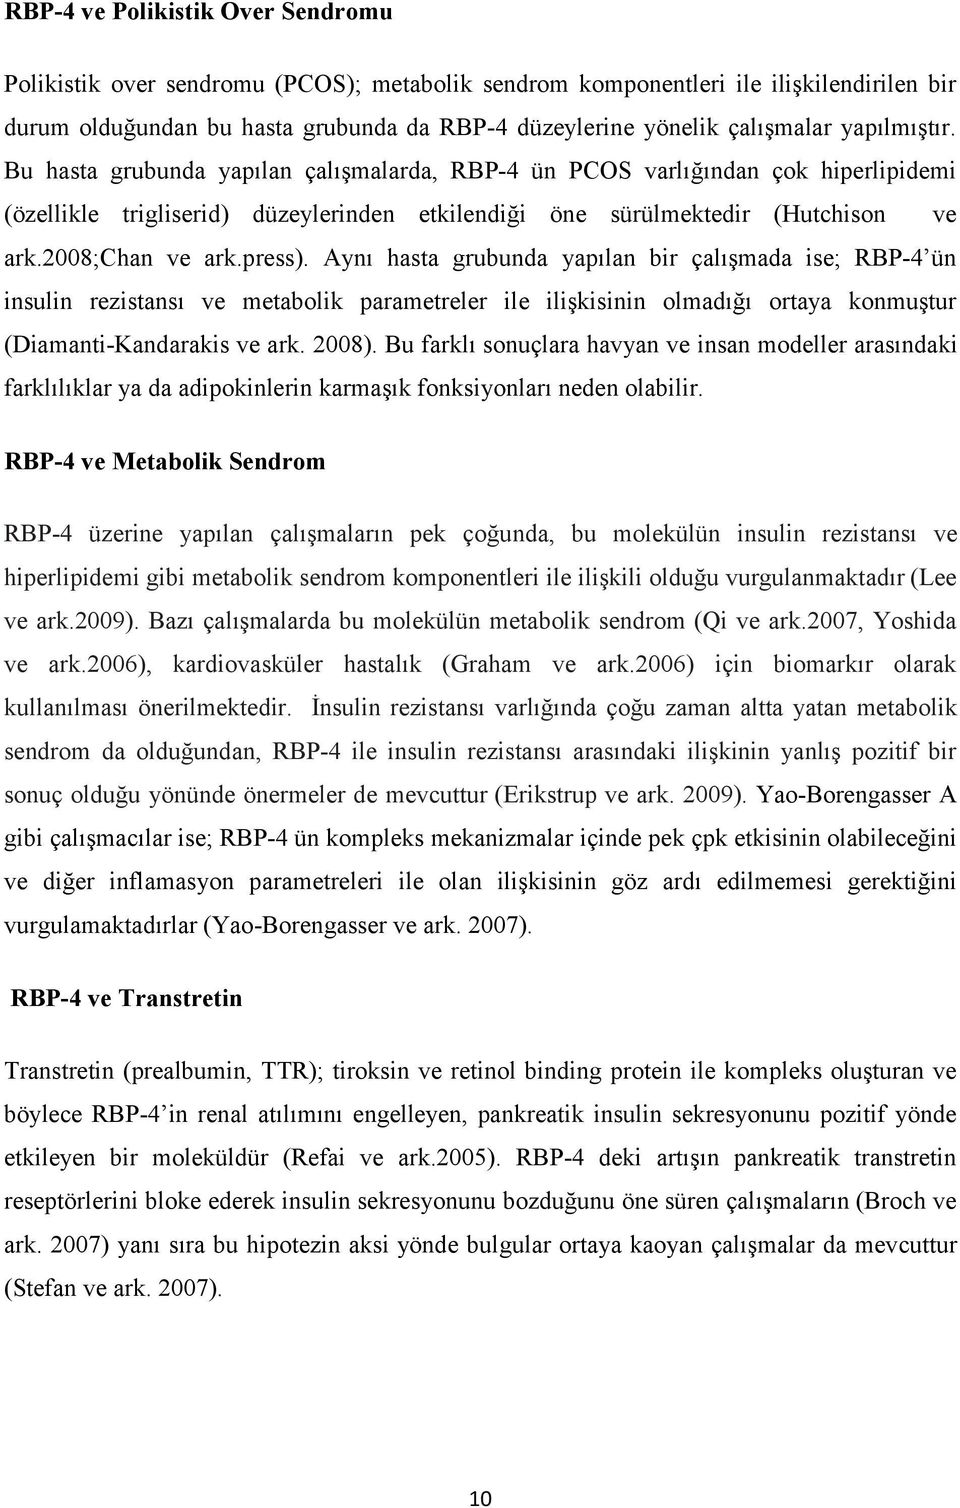 press). Aynı hasta grubunda yapılan bir çalışmada ise; RBP-4 ün insulin rezistansı ve metabolik parametreler ile ilişkisinin olmadığı ortaya konmuştur (Diamanti-Kandarakis ve ark. 2008).